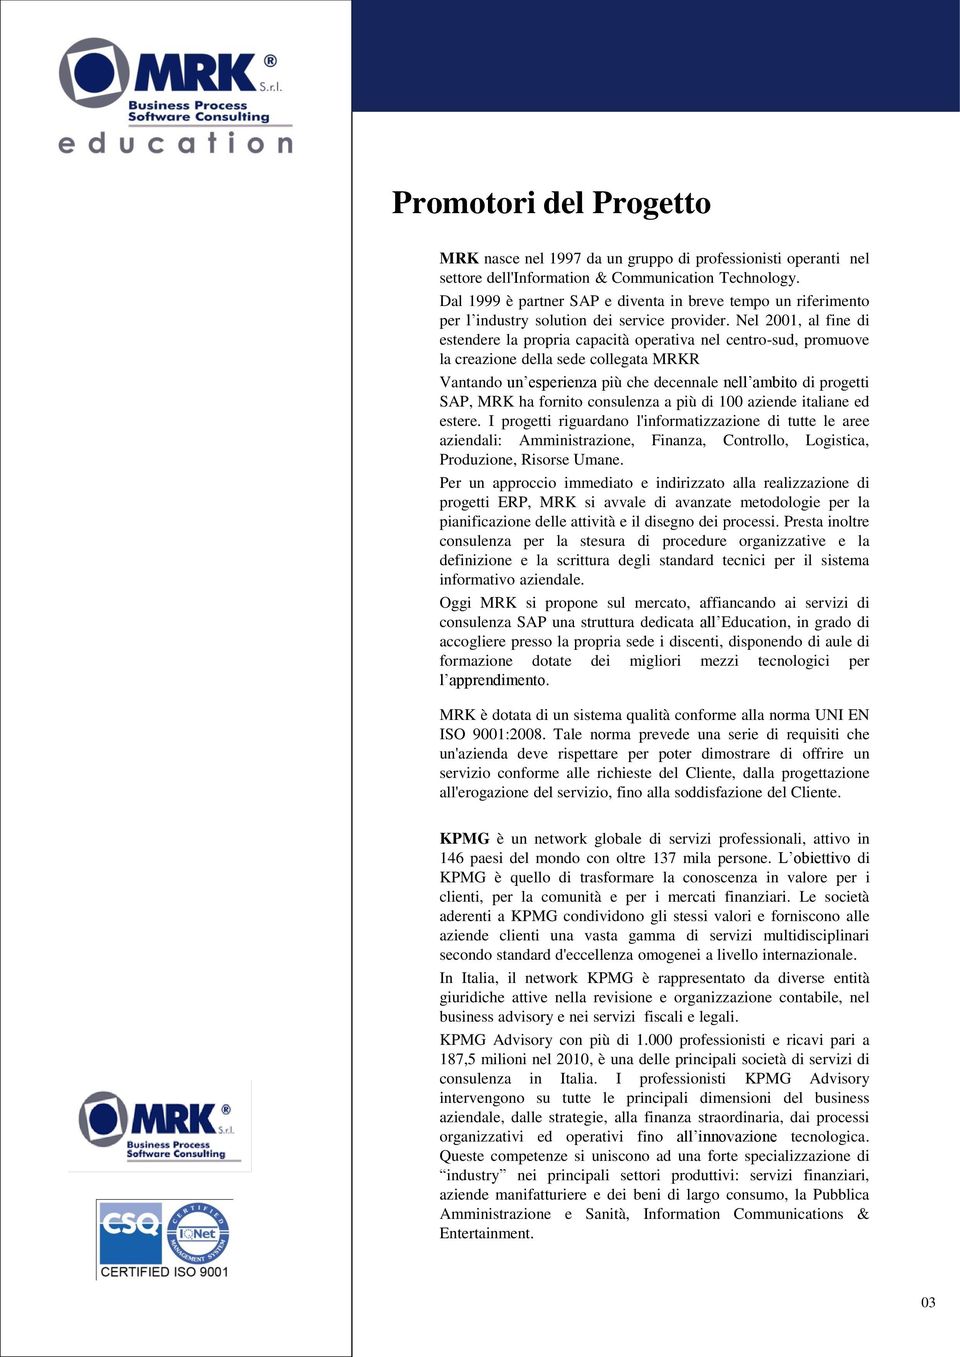 Nel 2001, al fine di estendere la propria capacità operativa nel centro-sud, promuove la creazione della sede collegata MRKR Vantando un esperienza più che decennale nell ambito di progetti SAP, MRK